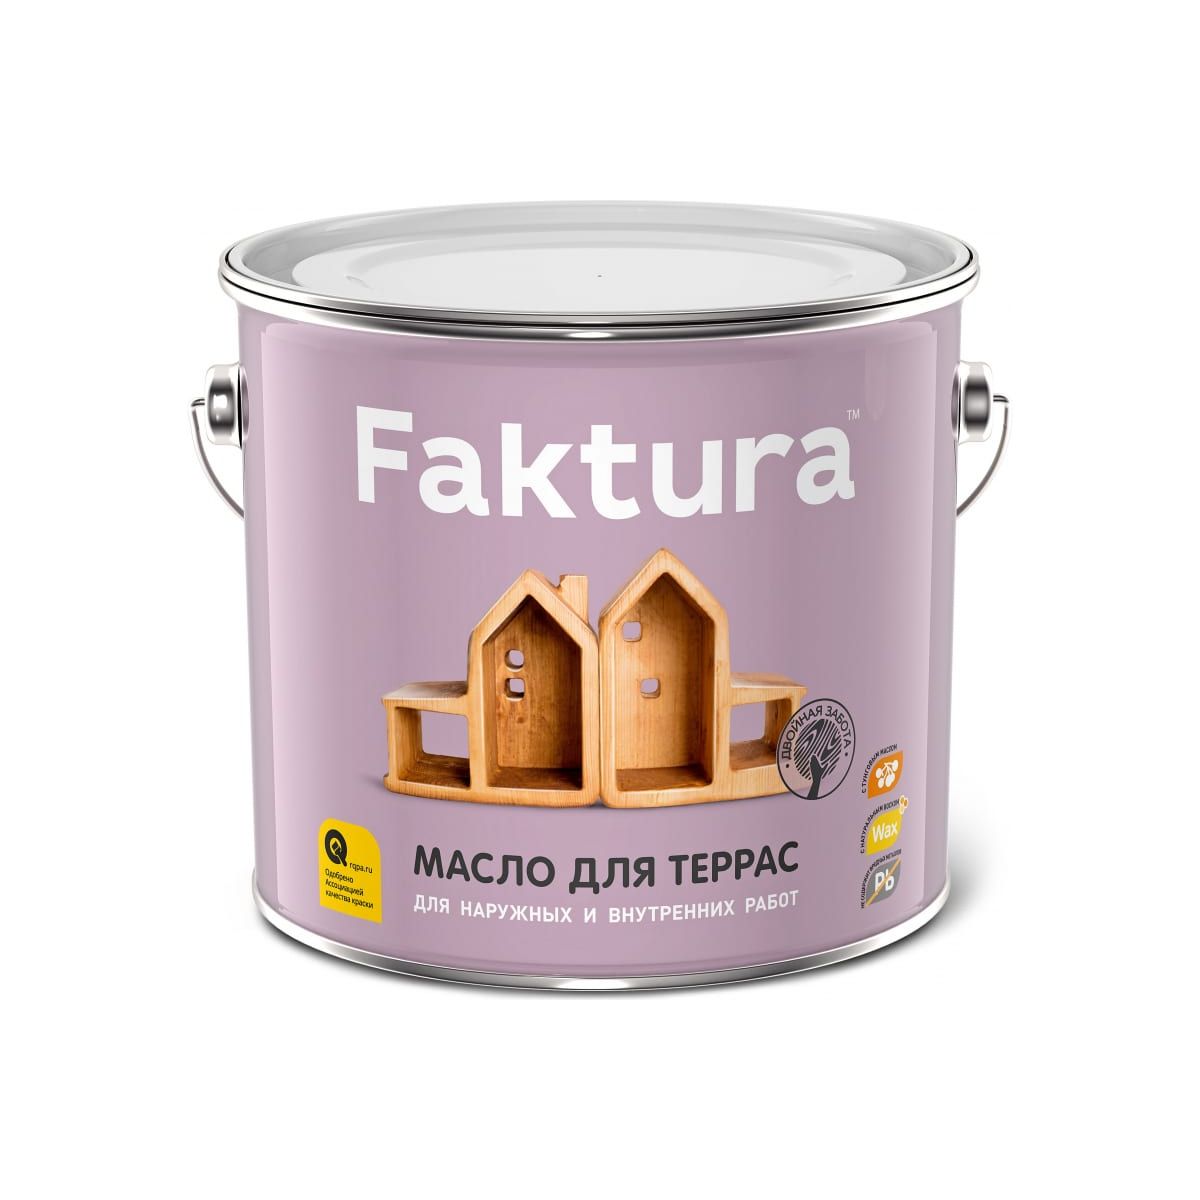 Масло Faktura для террас, 2,7 л